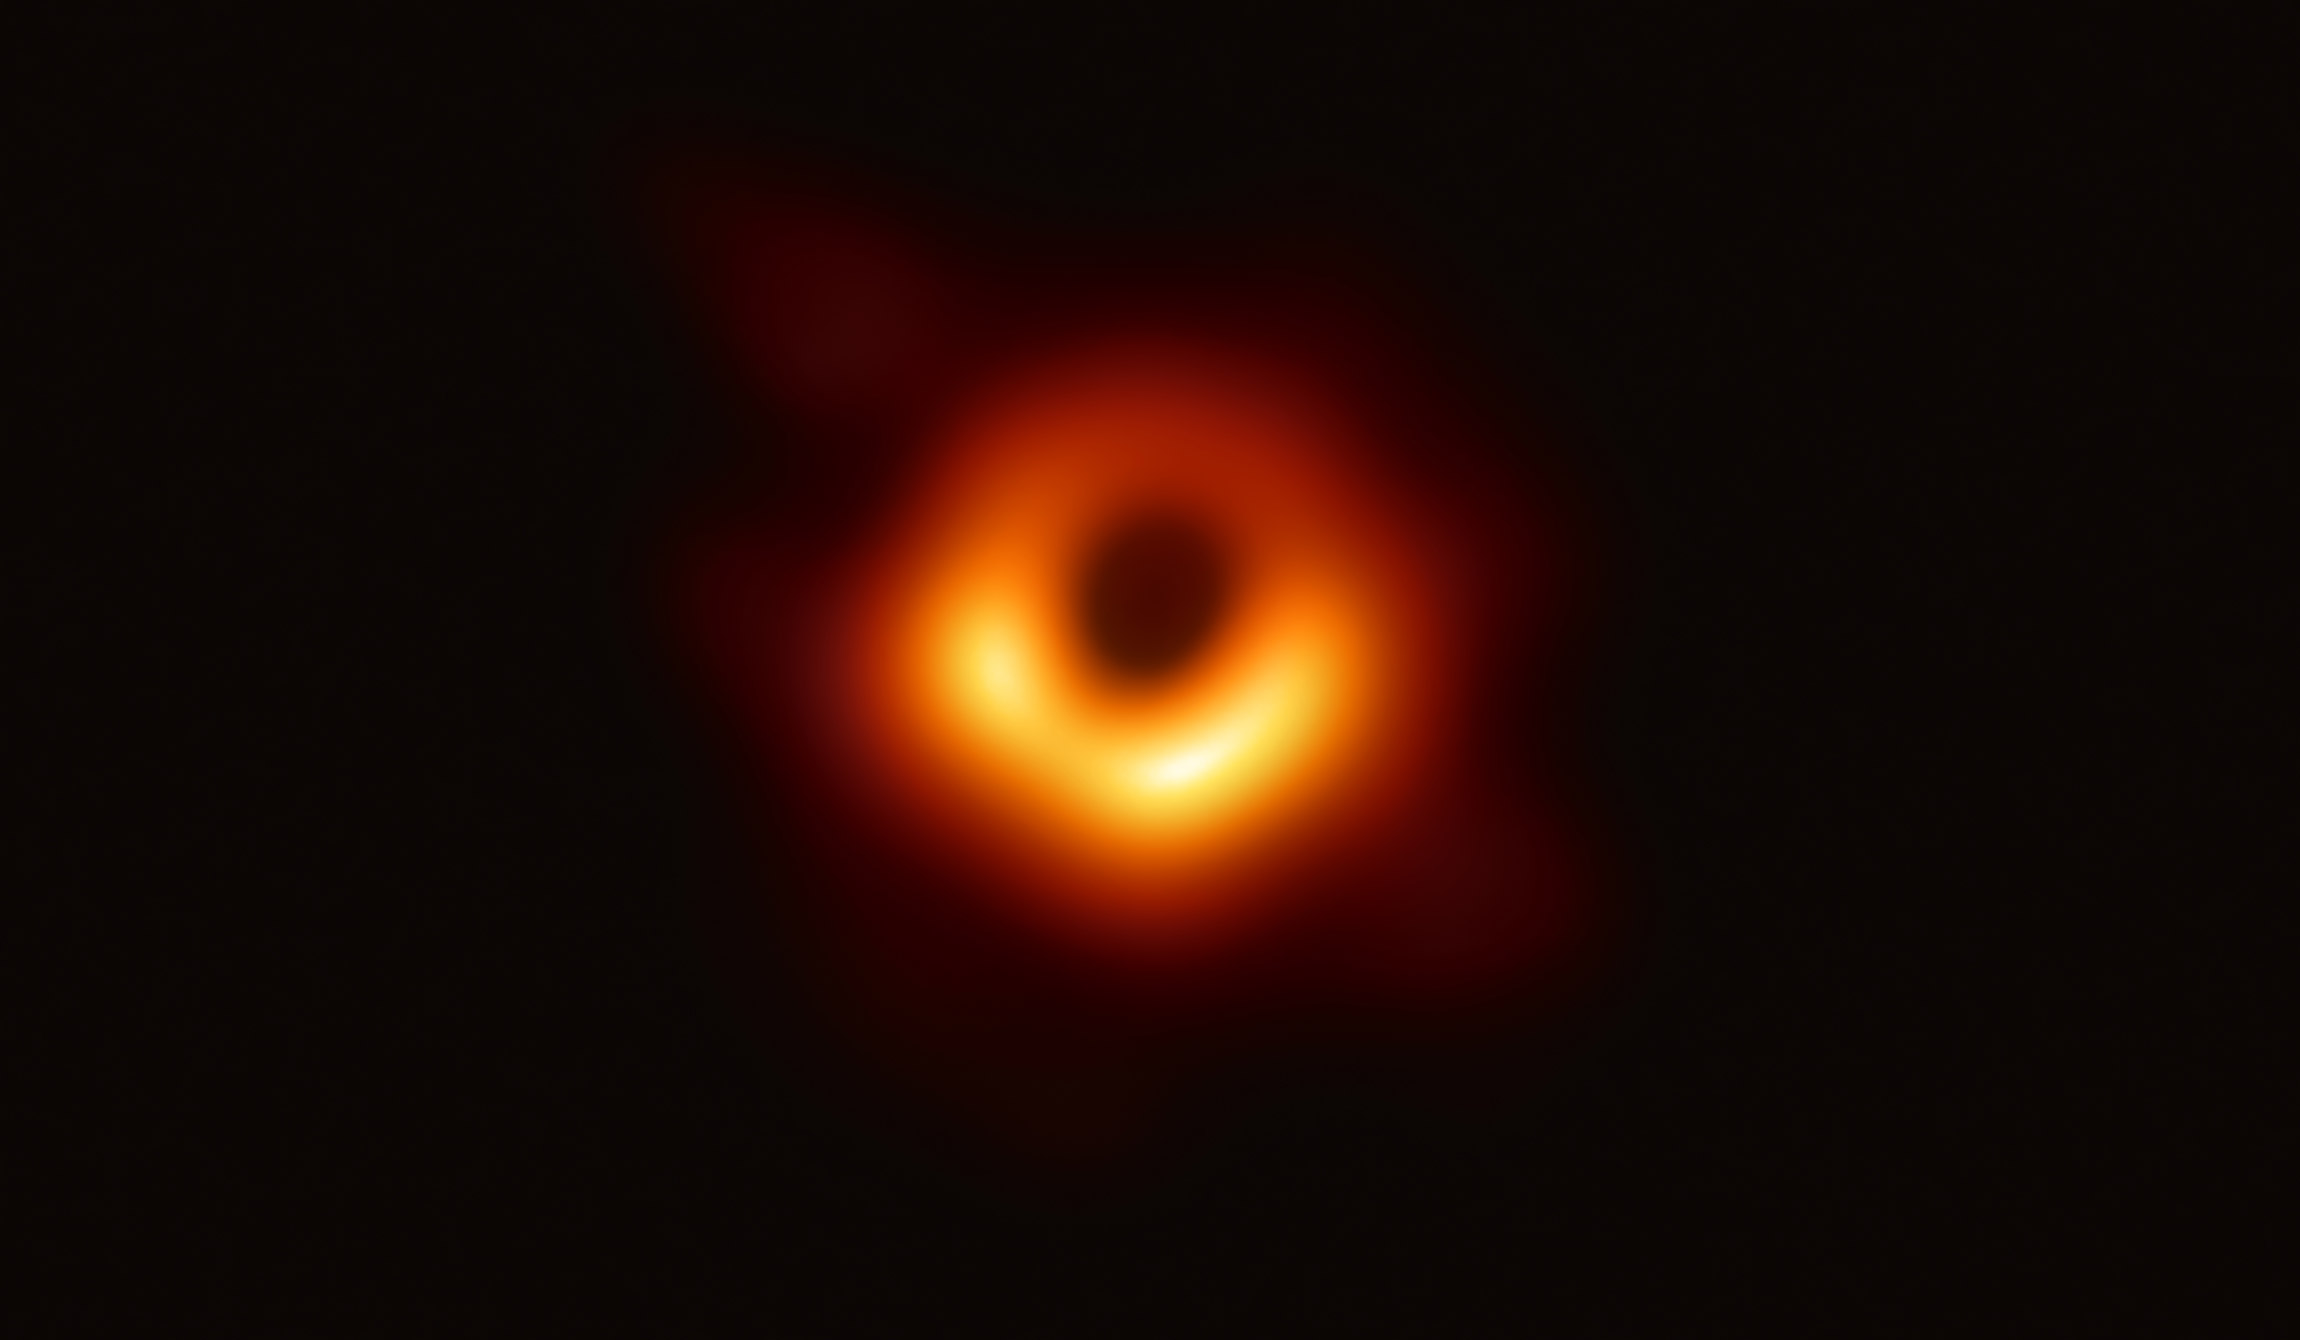 10 апреля. Телескоп Event Horizon зафиксировал черную дыру в центре галактики M87, очерченную излучением горячего газа, закрученного вокруг нее под влиянием сильной гравитации вблизи ее горизонта событий
